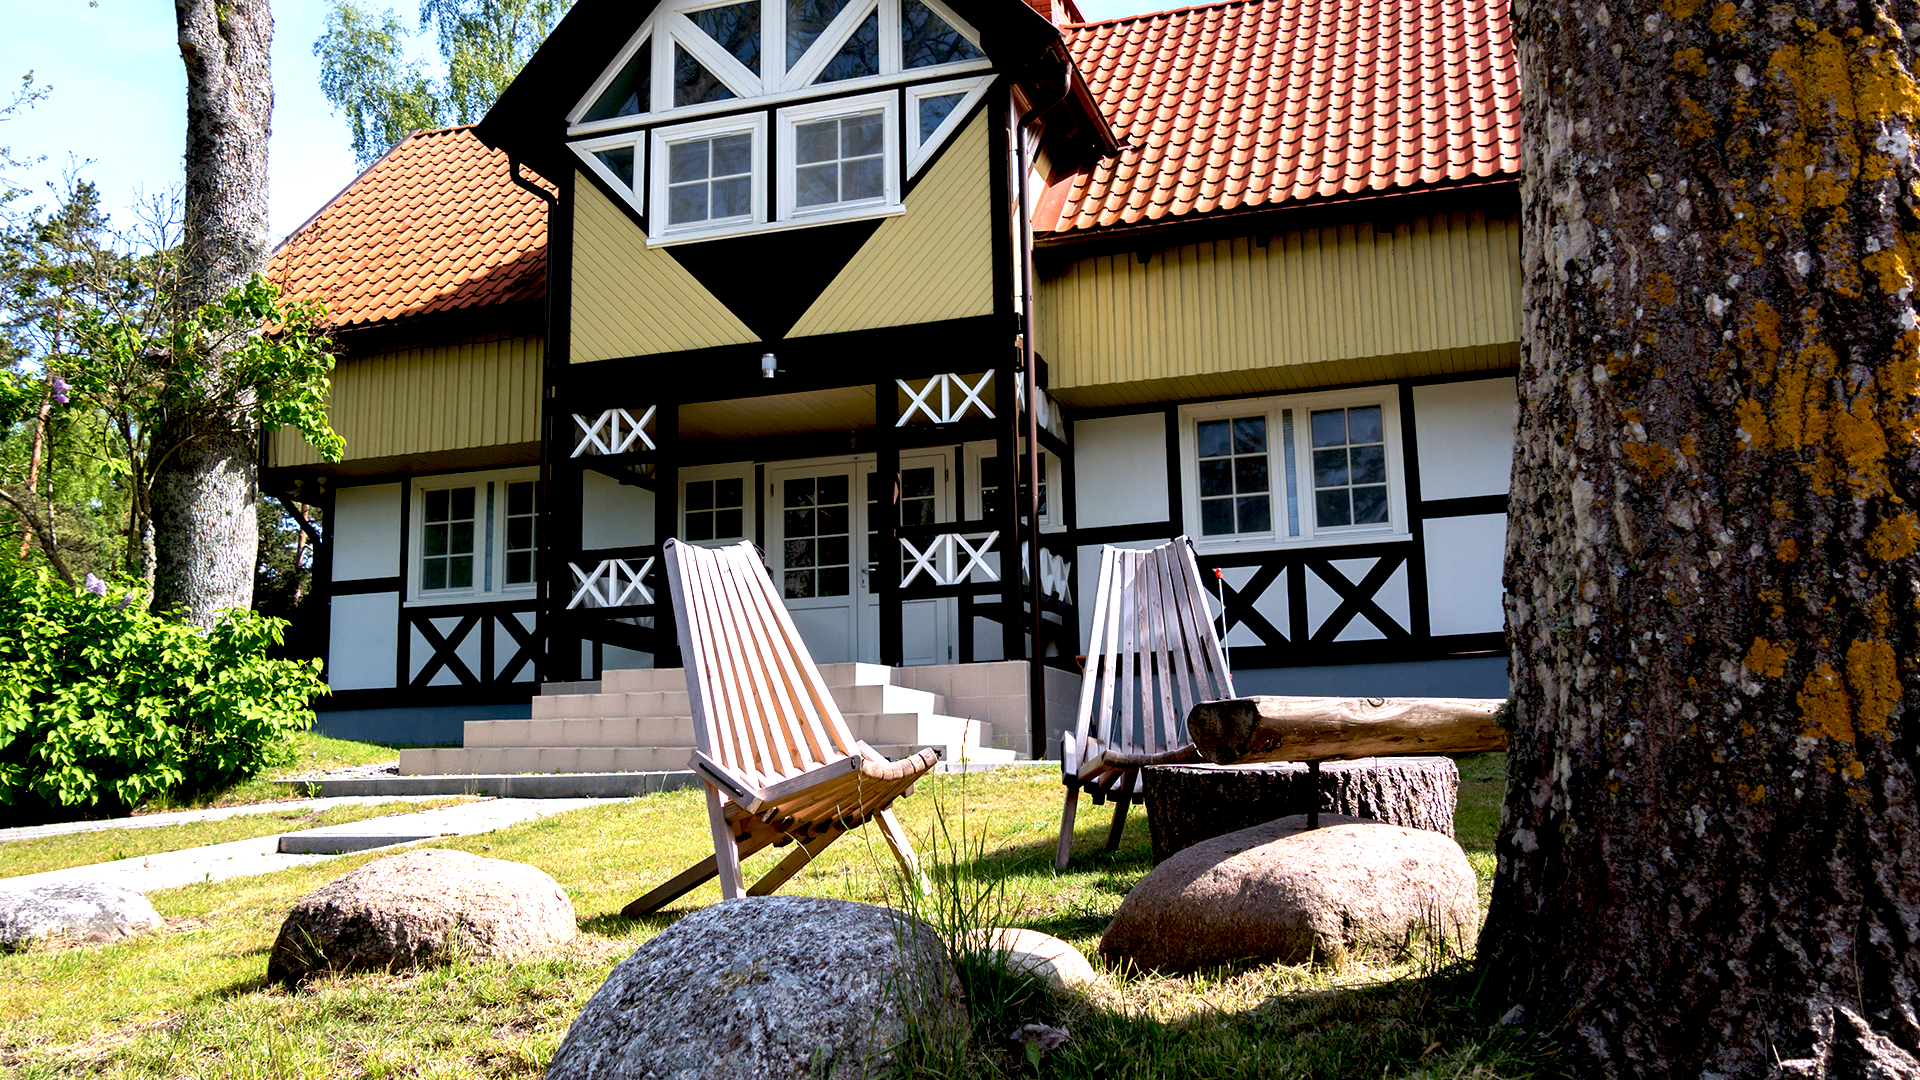 Tarptautiniame vertėjų ir rašytojų centre rezidentai iš Islandijos ir Estijos